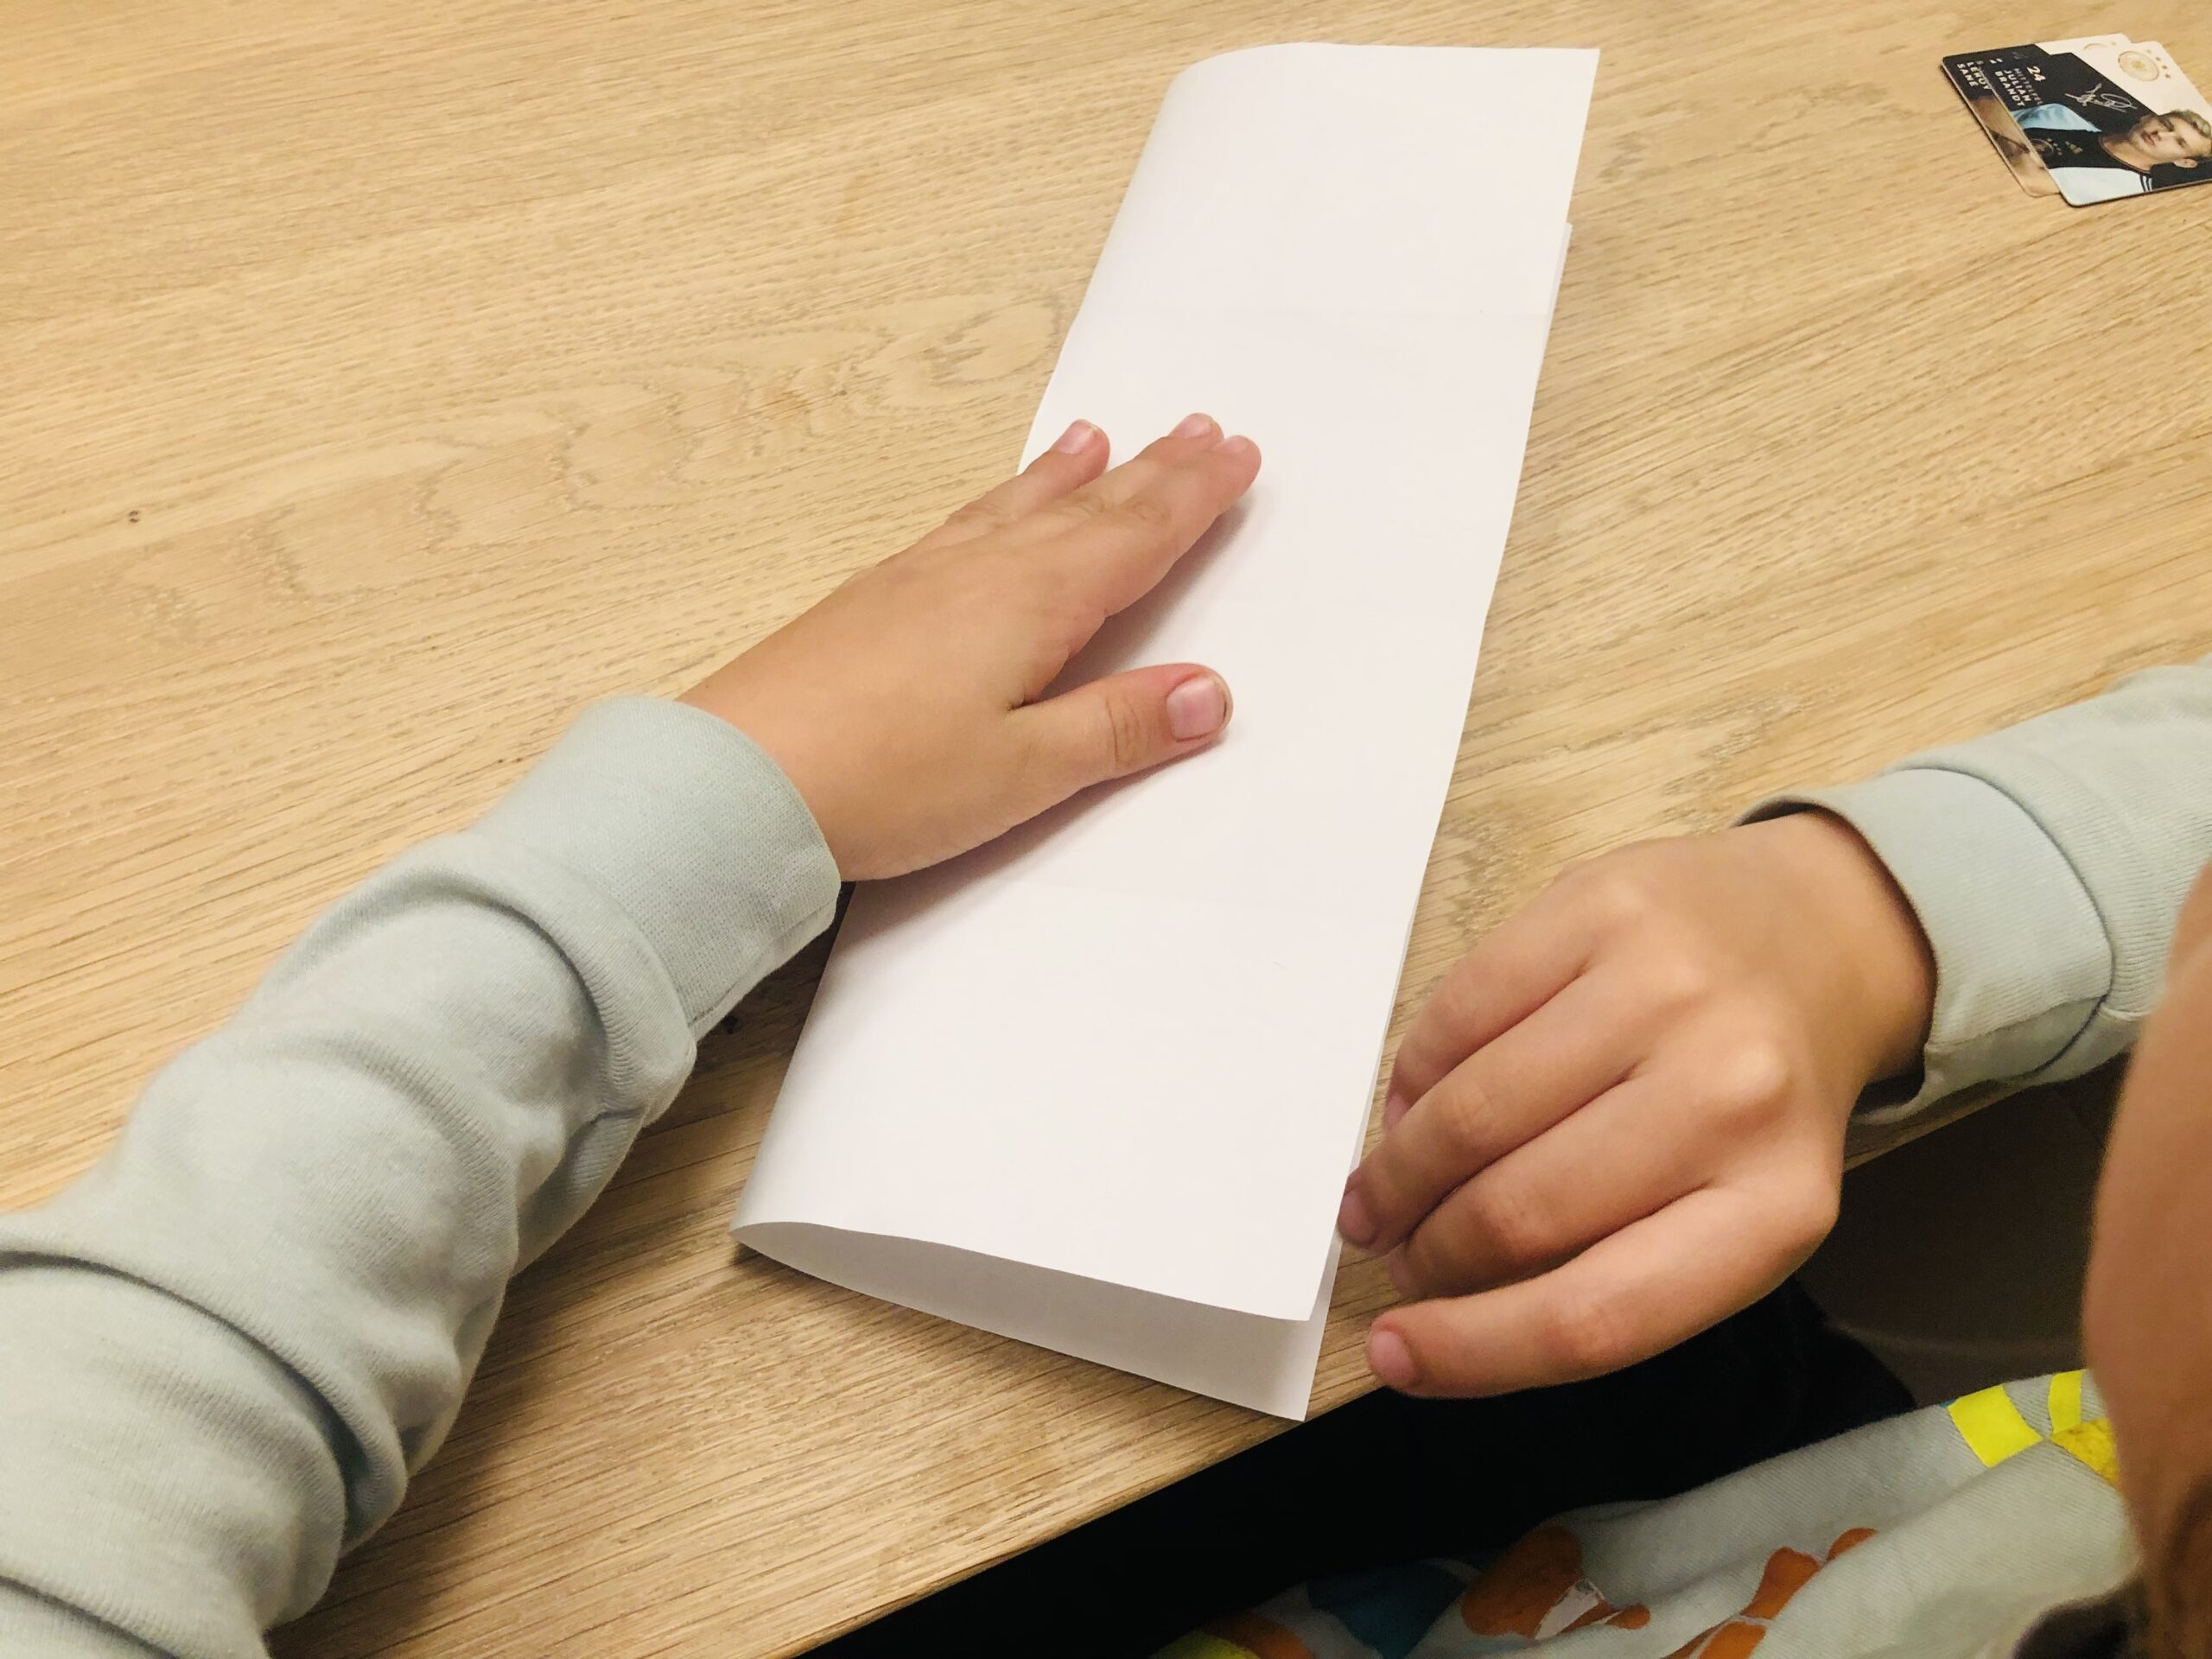 Bild zum Schritt 15 für das Bastel- und DIY-Abenteuer für Kinder: 'Faltet das Papier nun auseinander. Legt es hochkant vor euch...'